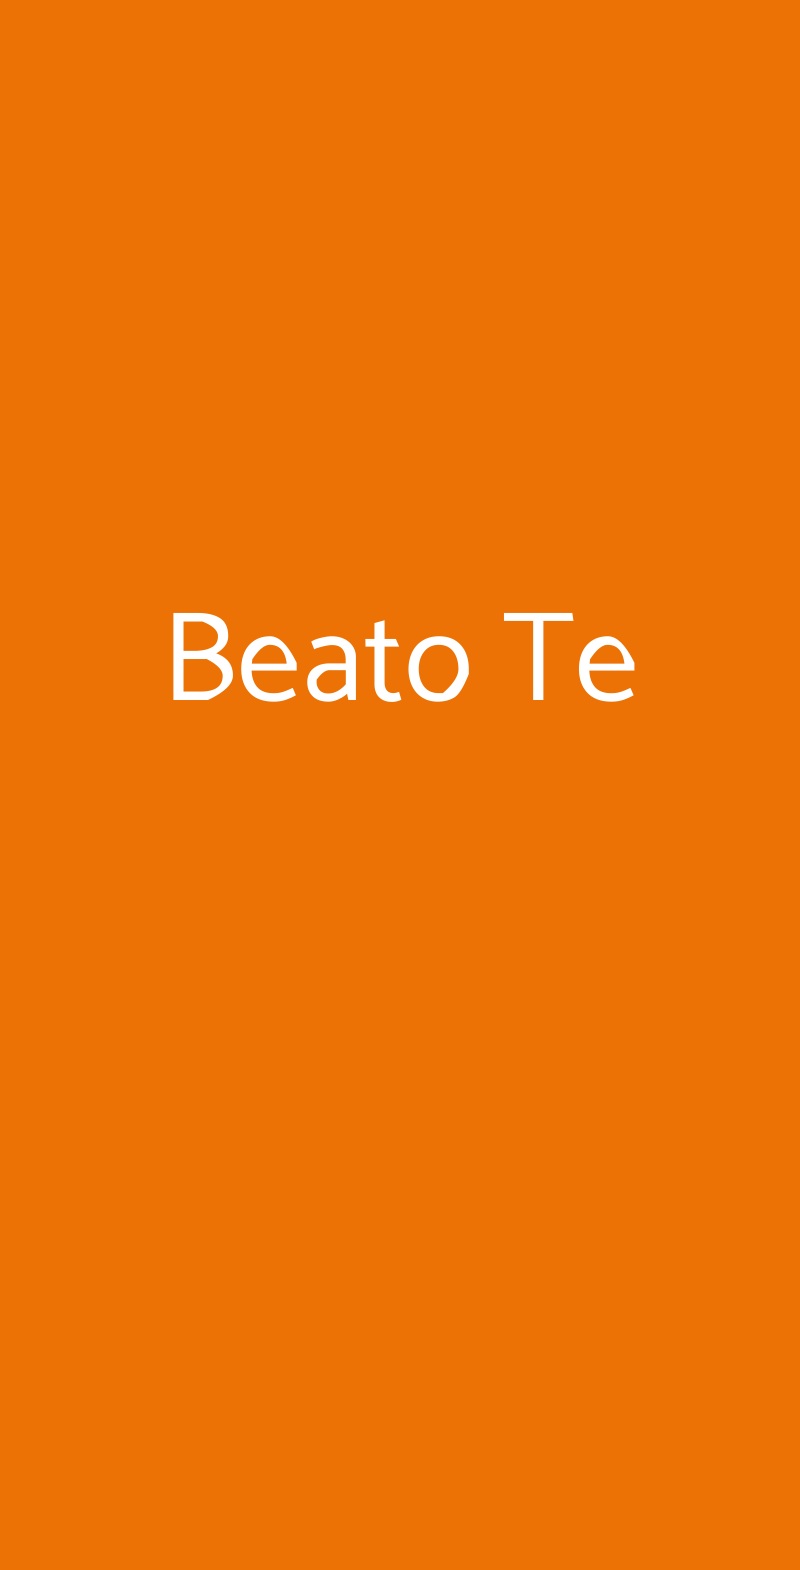 Beato Te Milano menù 1 pagina